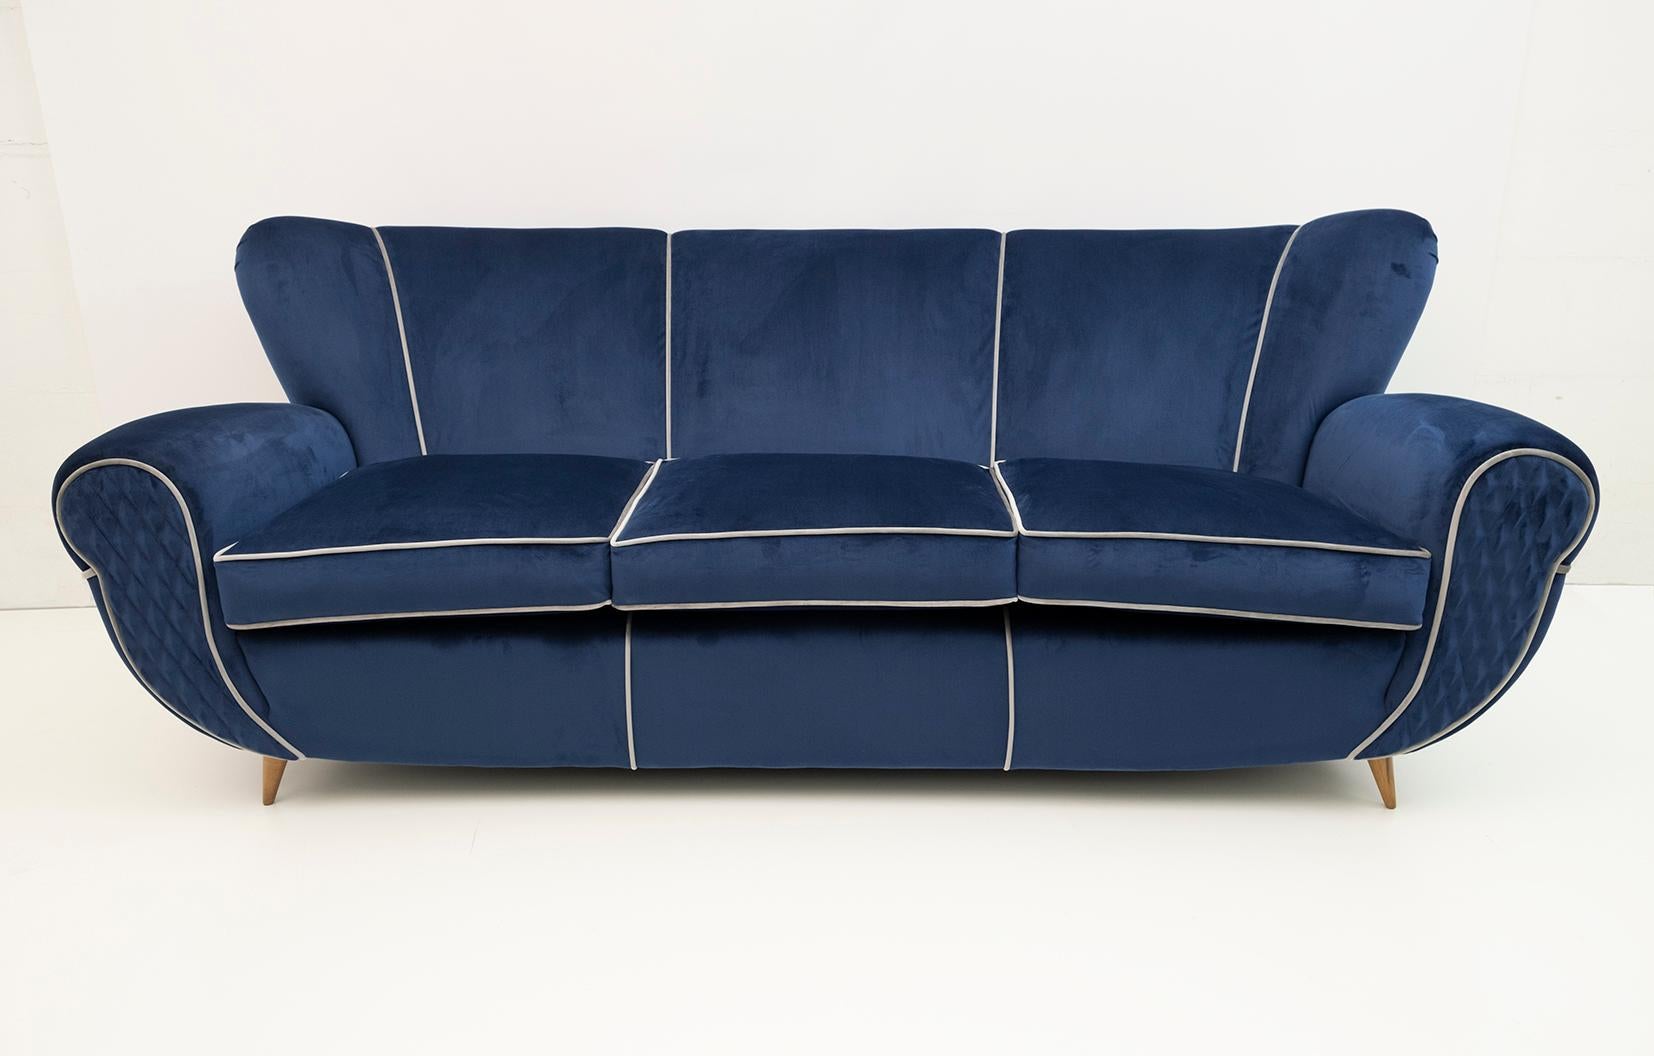 Un grand canapé sculptural italien conçu par Guglielmo Ulrich, très confortable. Récemment recouvert de velours bleu clair avec une bordure de velours gris clair, de manière minimaliste, ce qui accentue les formes courbes. Les pieds effilés et